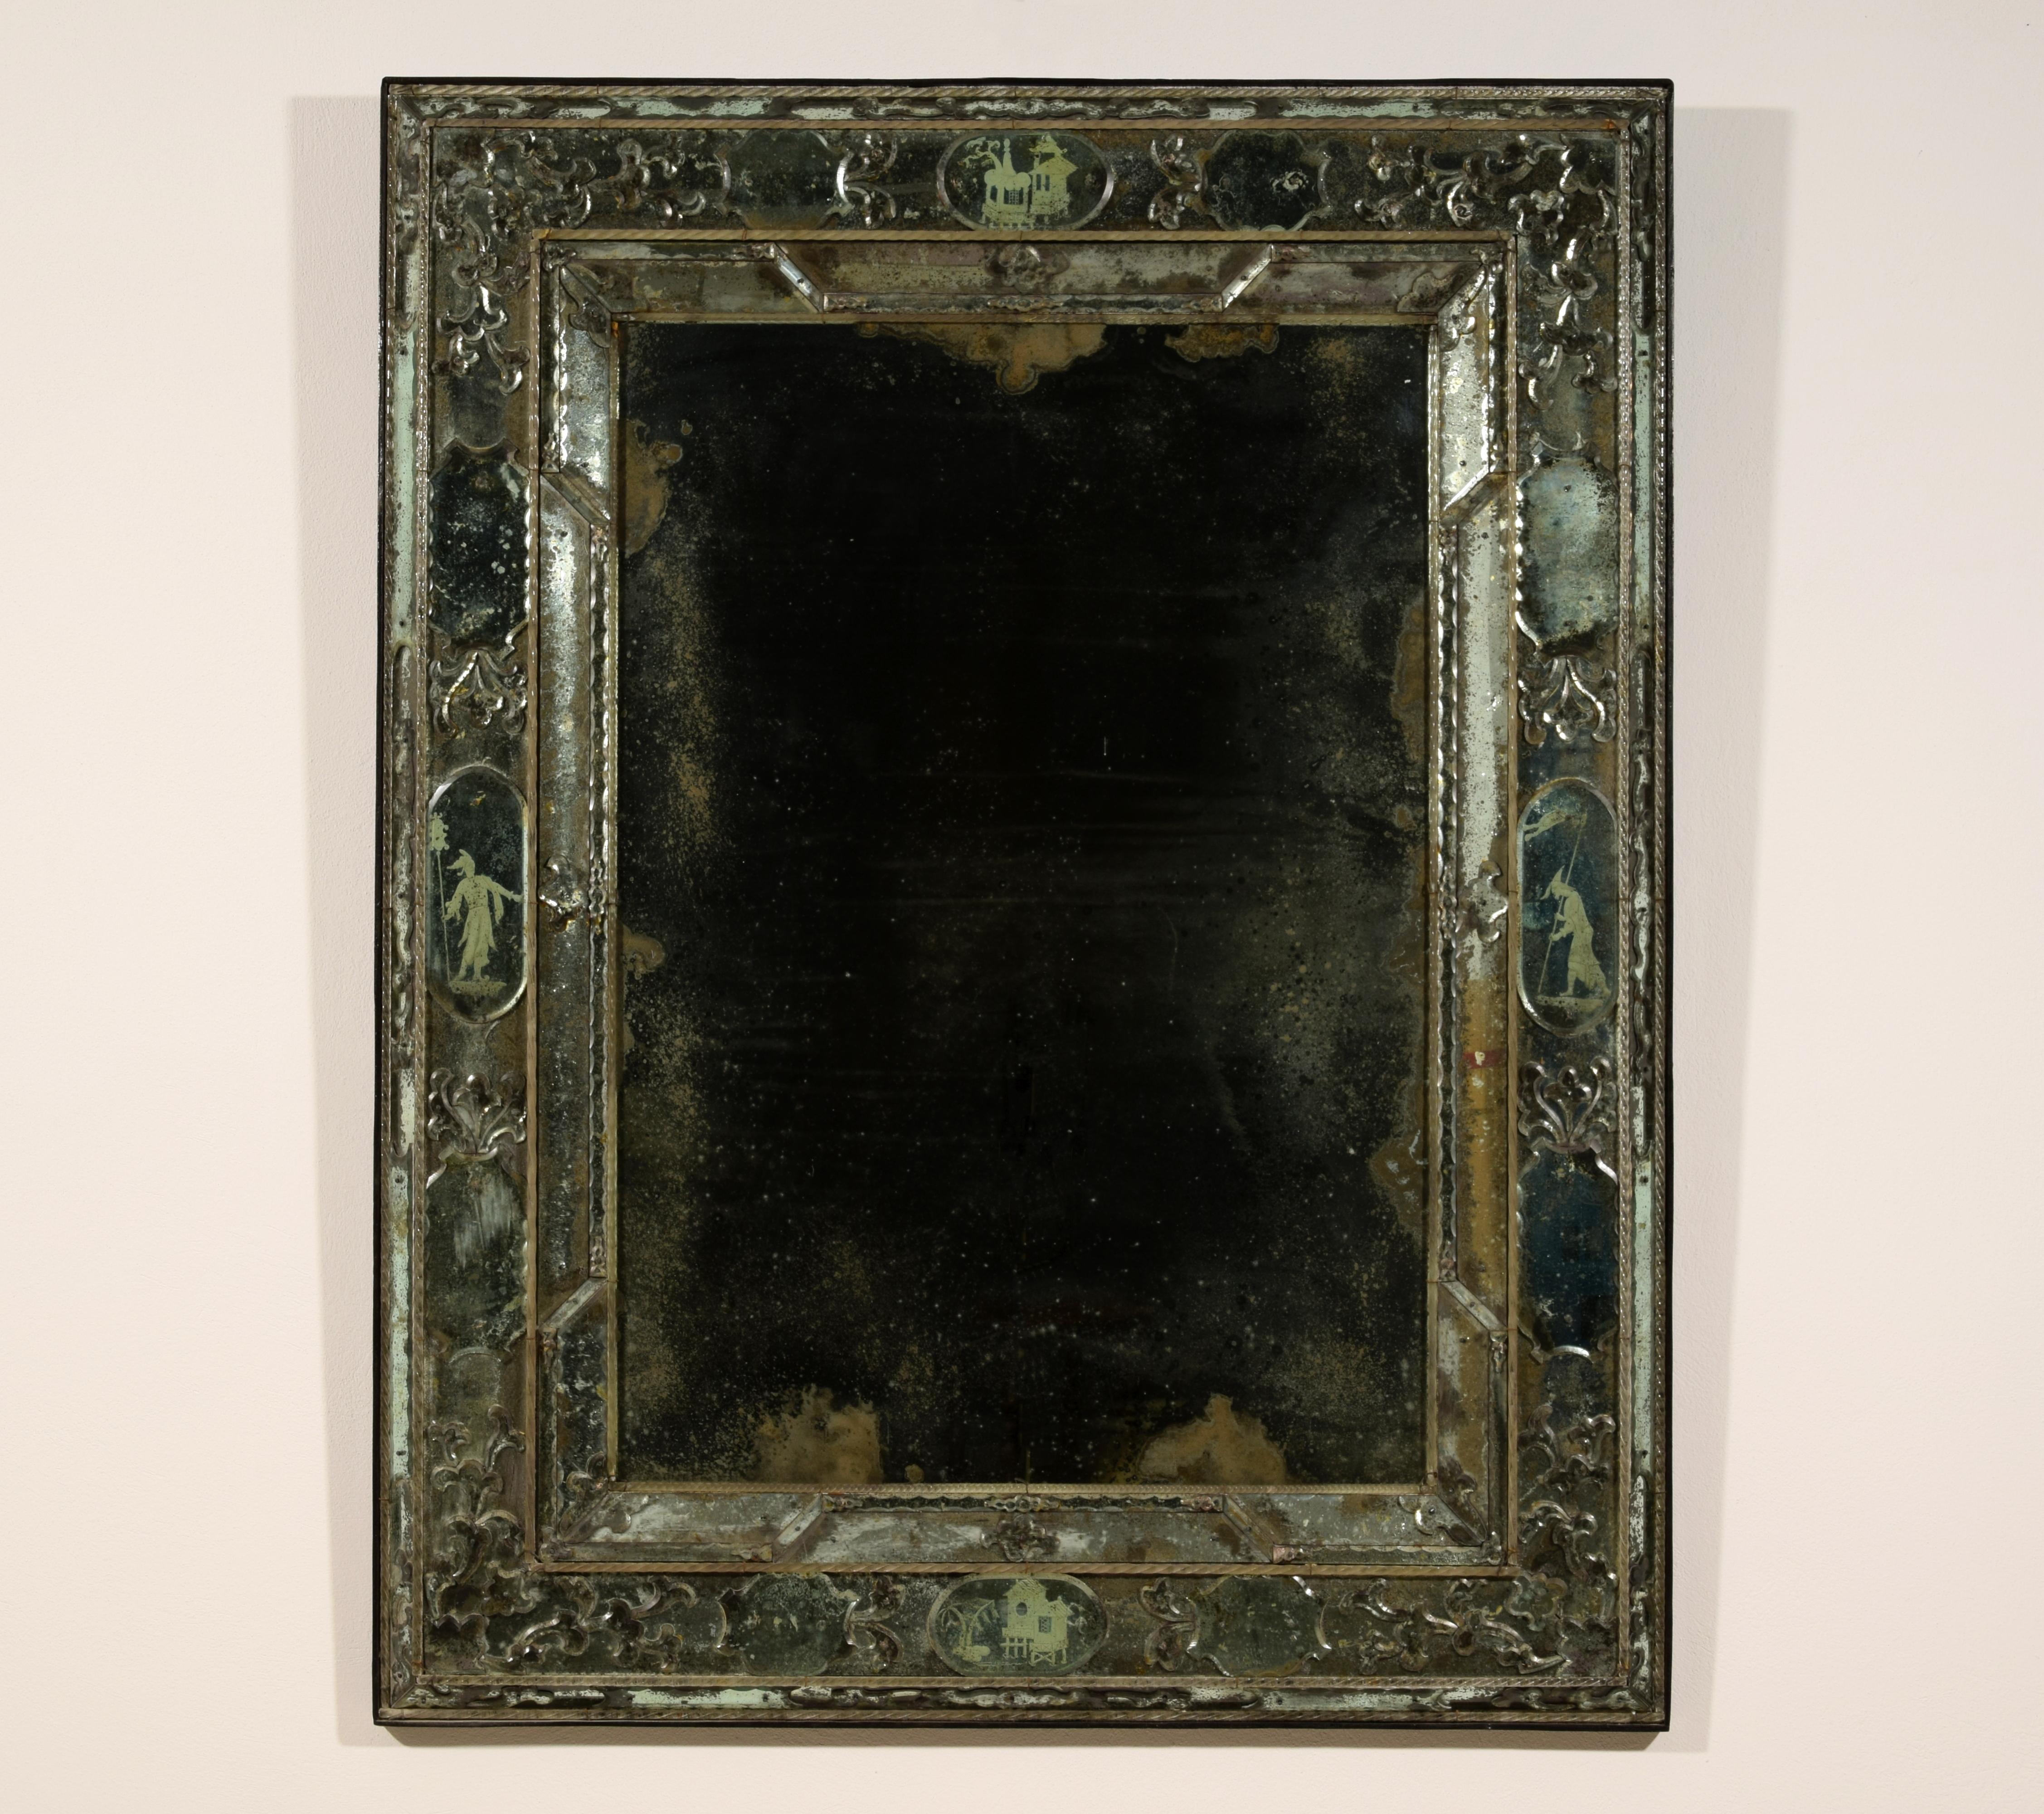 20. Jahrhundert, Venezianischer Spiegel
Dieser raffinierte Spiegel wurde im 20. Jahrhundert in Murano, Venedig, in dem in der Lagunenstadt im frühen achtzehnten Jahrhundert weit verbreiteten Stil hergestellt. Der Spiegel wird in einem komplexen